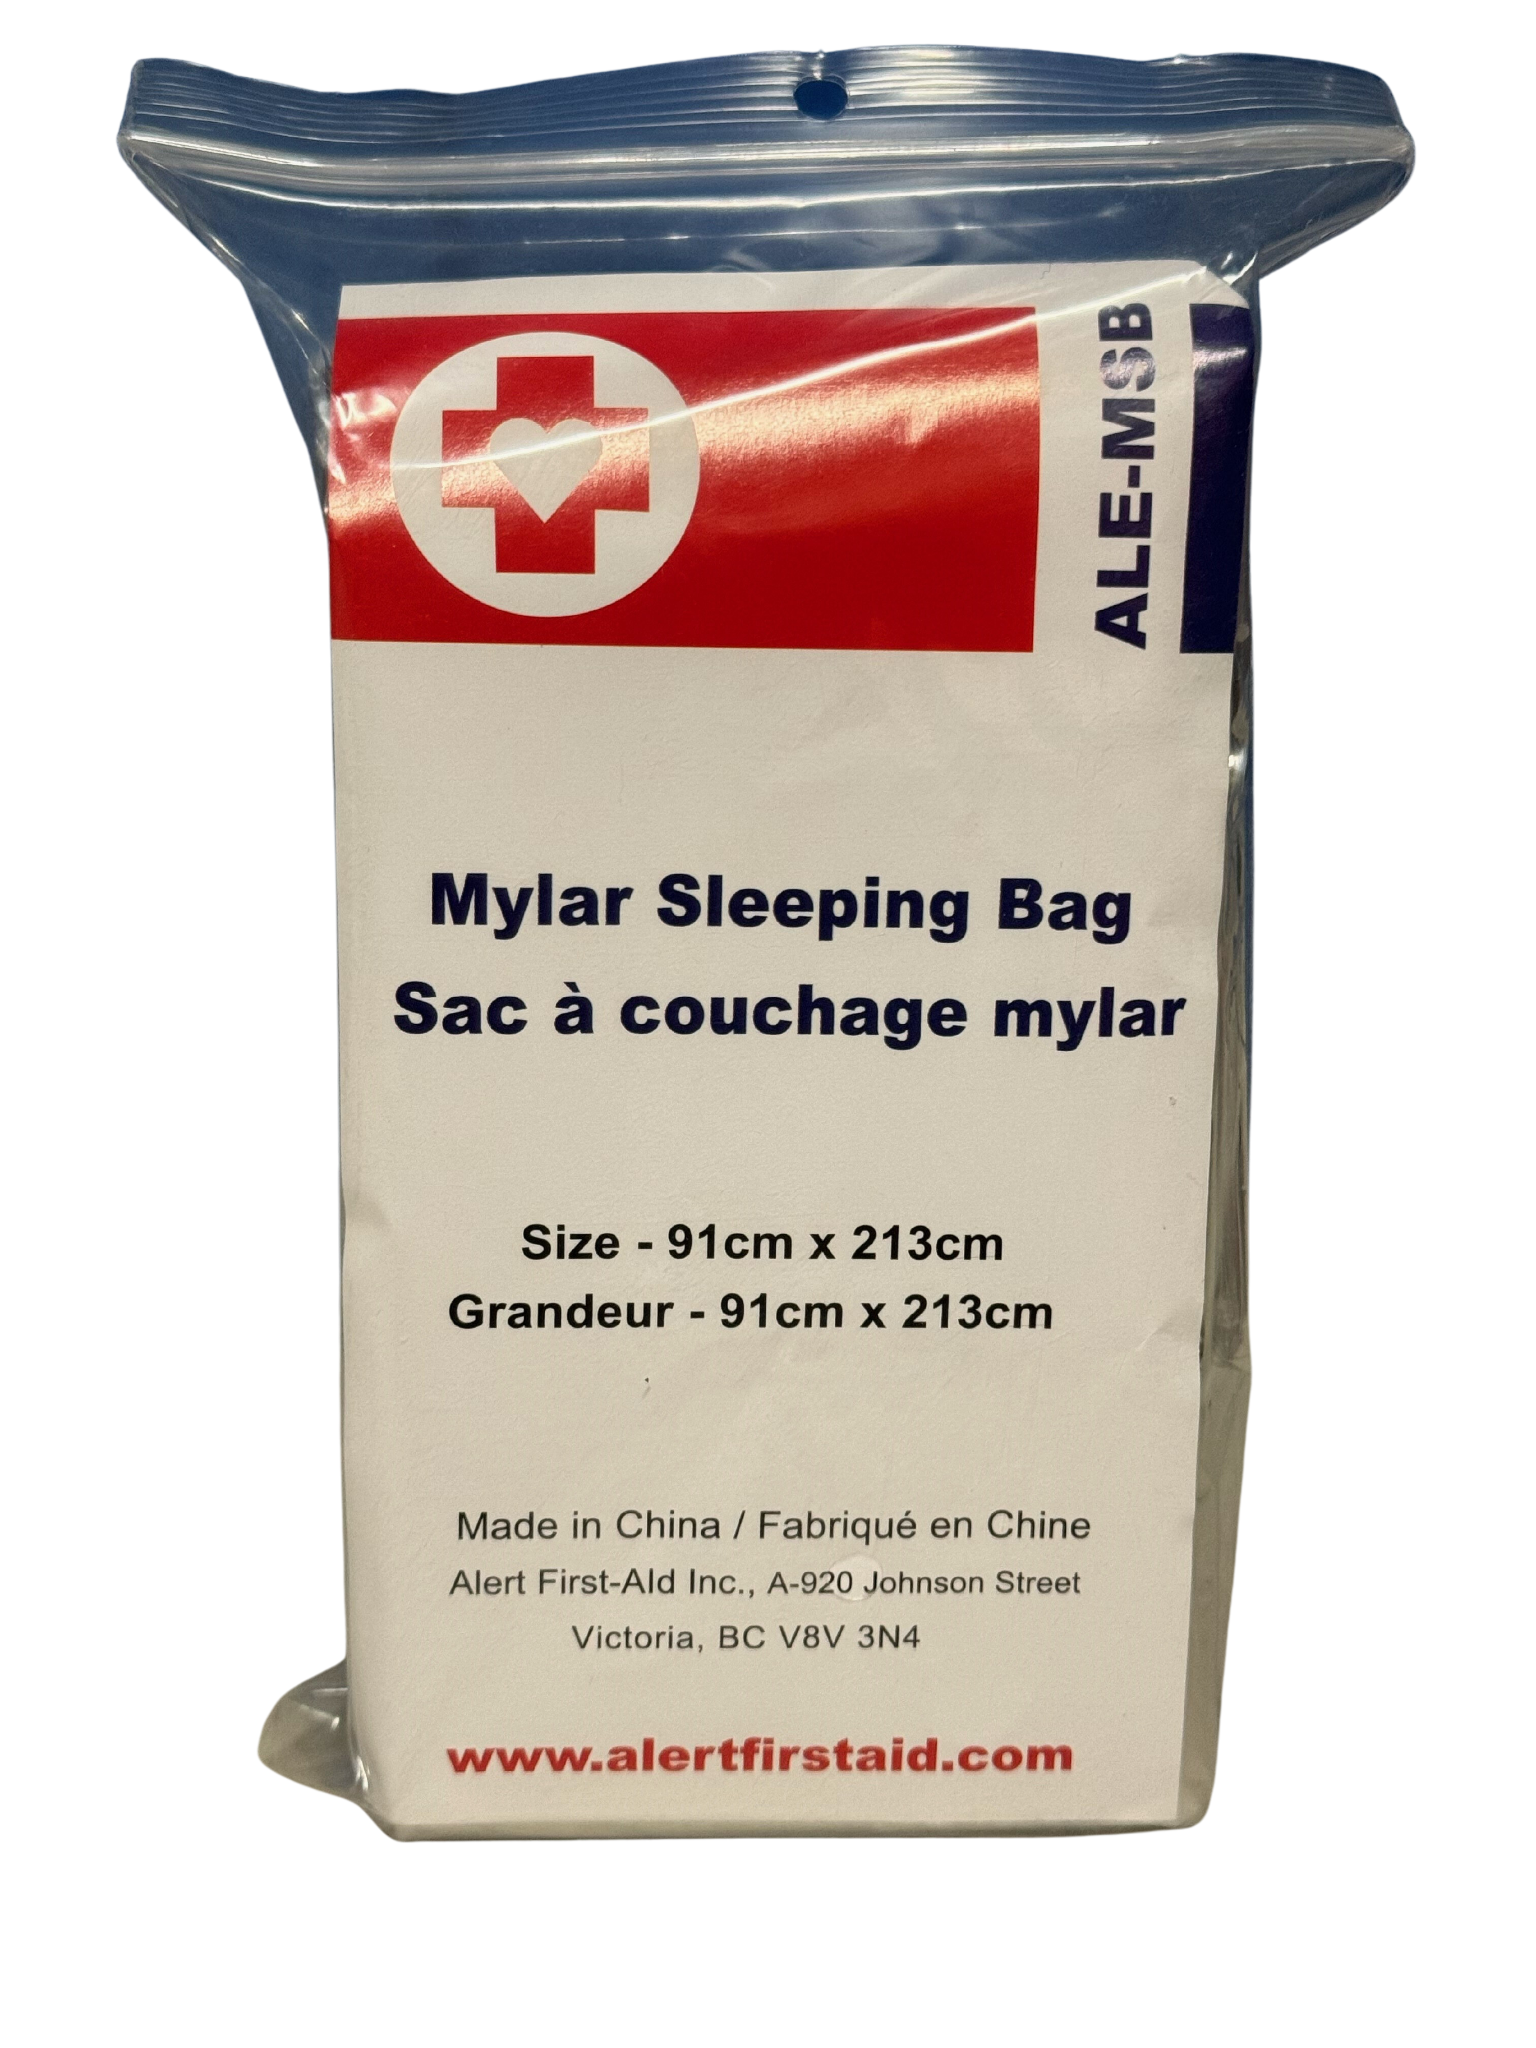 Emergency Sleeping Bag image